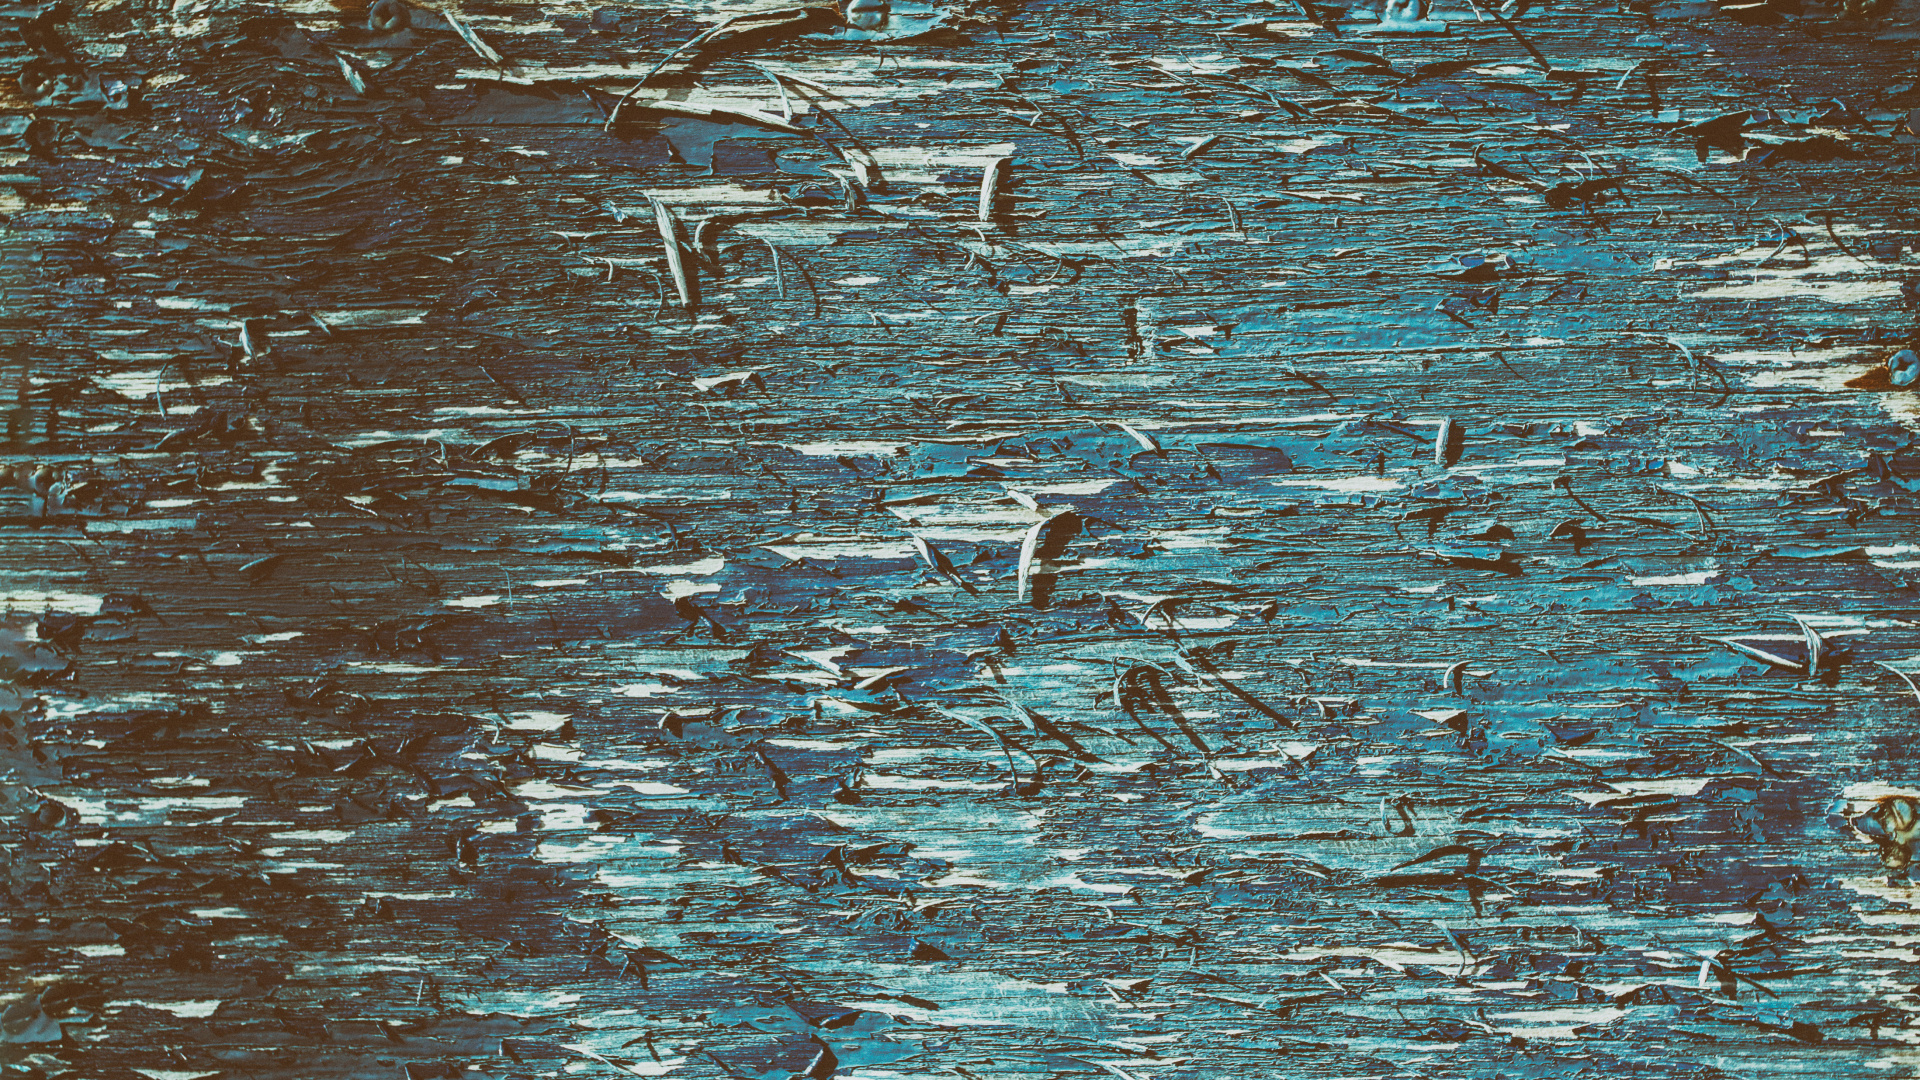 Weiße Und Schwarze Vögel Auf Dem Wasser. Wallpaper in 1920x1080 Resolution